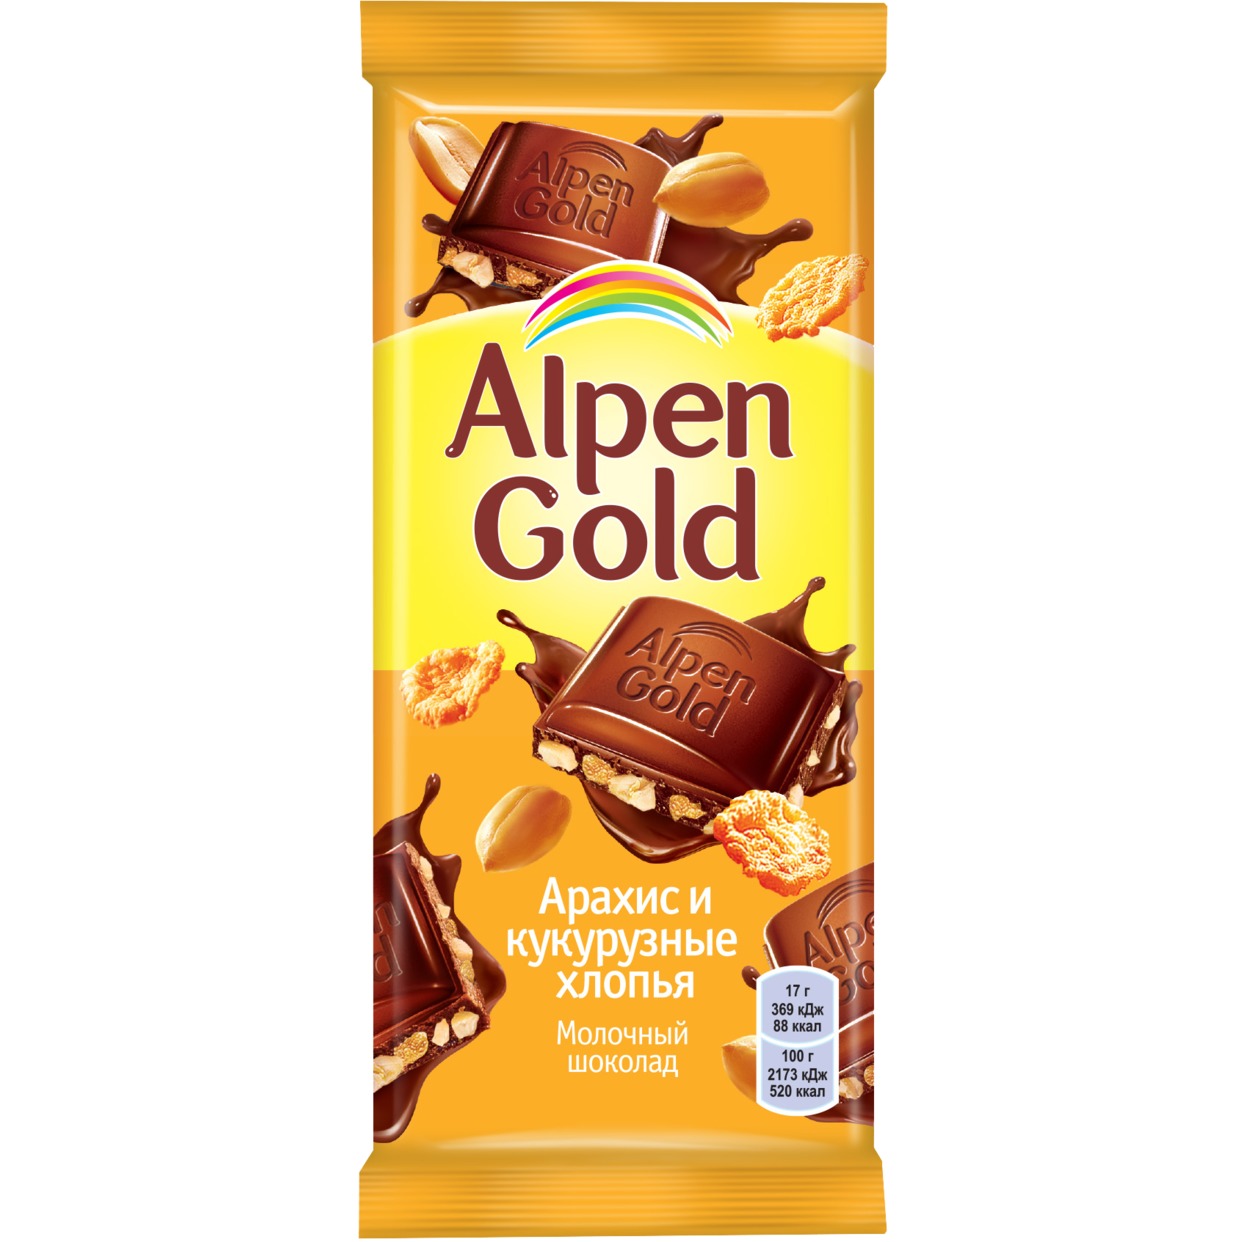 Шоколад молочный Alpen Gold Альпен Гольд с арахисом и кукурузными хлопьями, 85г по акции в Пятерочке